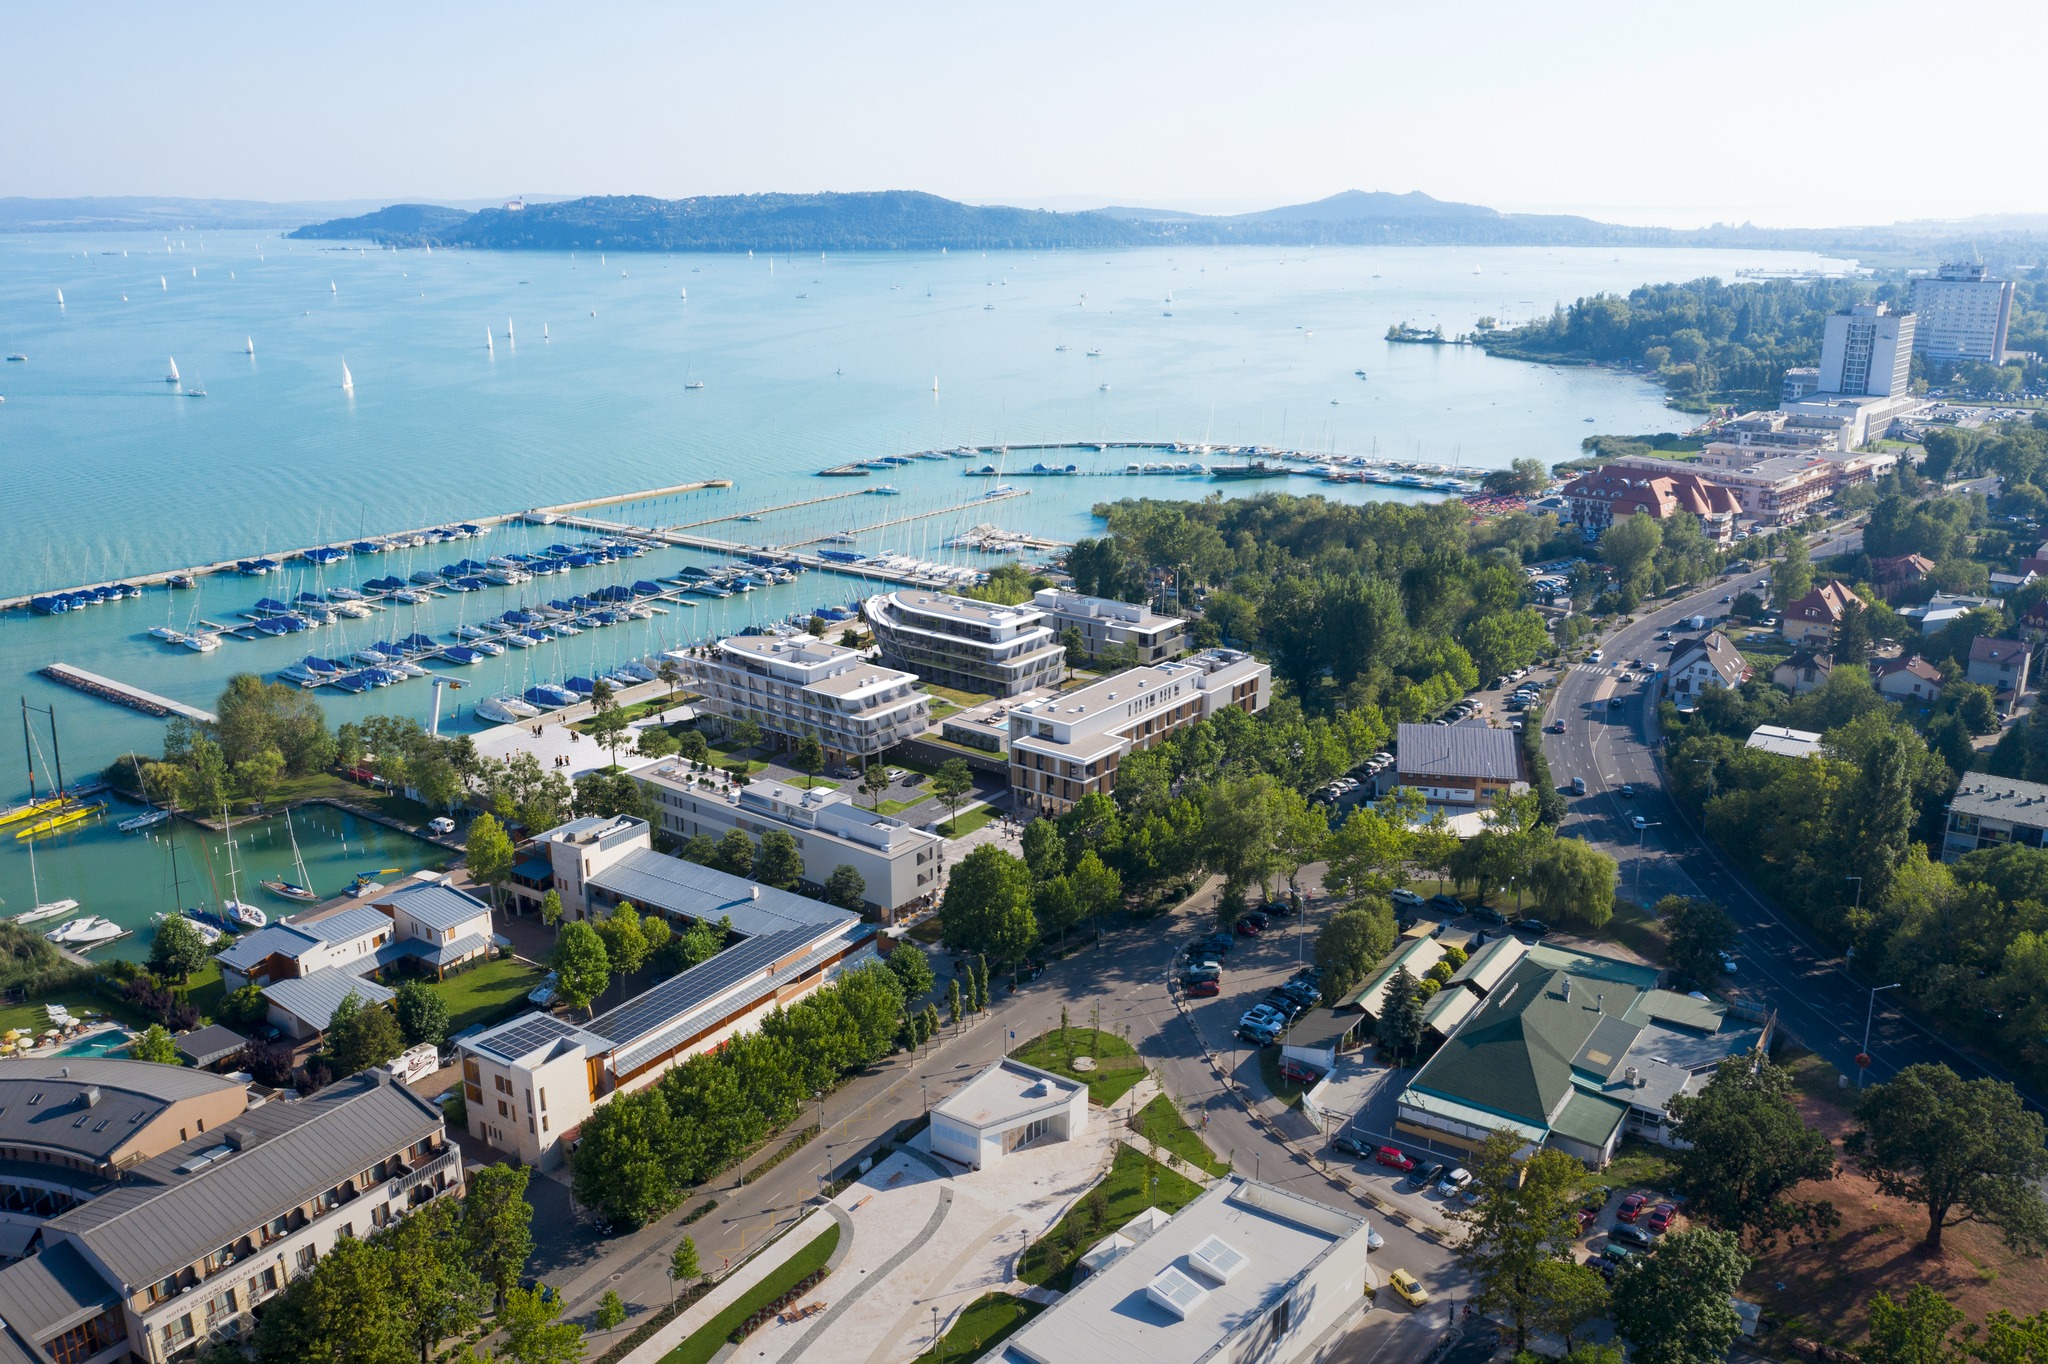 Neues Luxushotel bringt französische Riviera und italienische Dolce Vita an die Ufer des Balaton